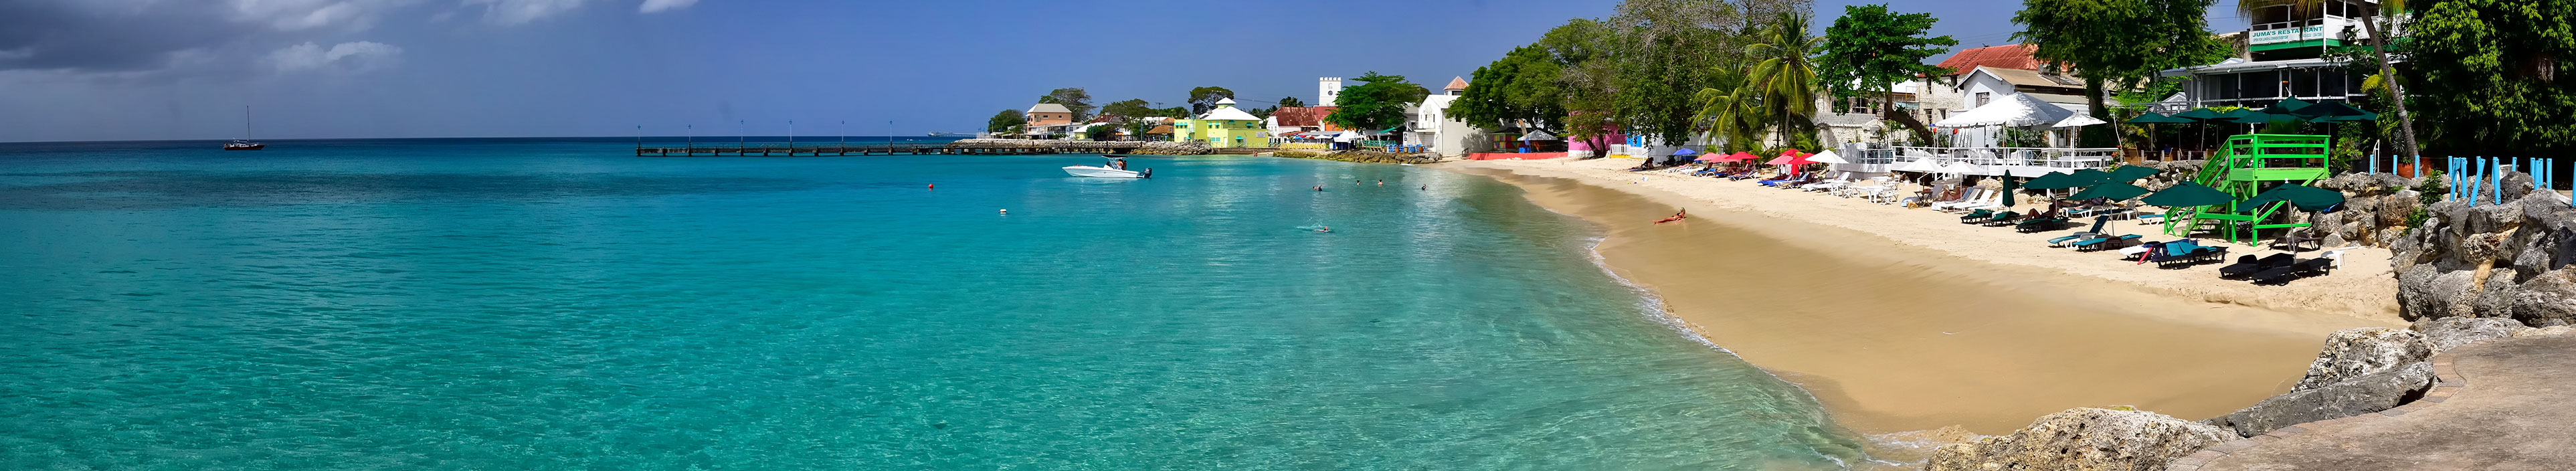 Menschen schwimmen im Meer in Speightstown, einer der größten Städte an der Westküste der Insel Barbados.